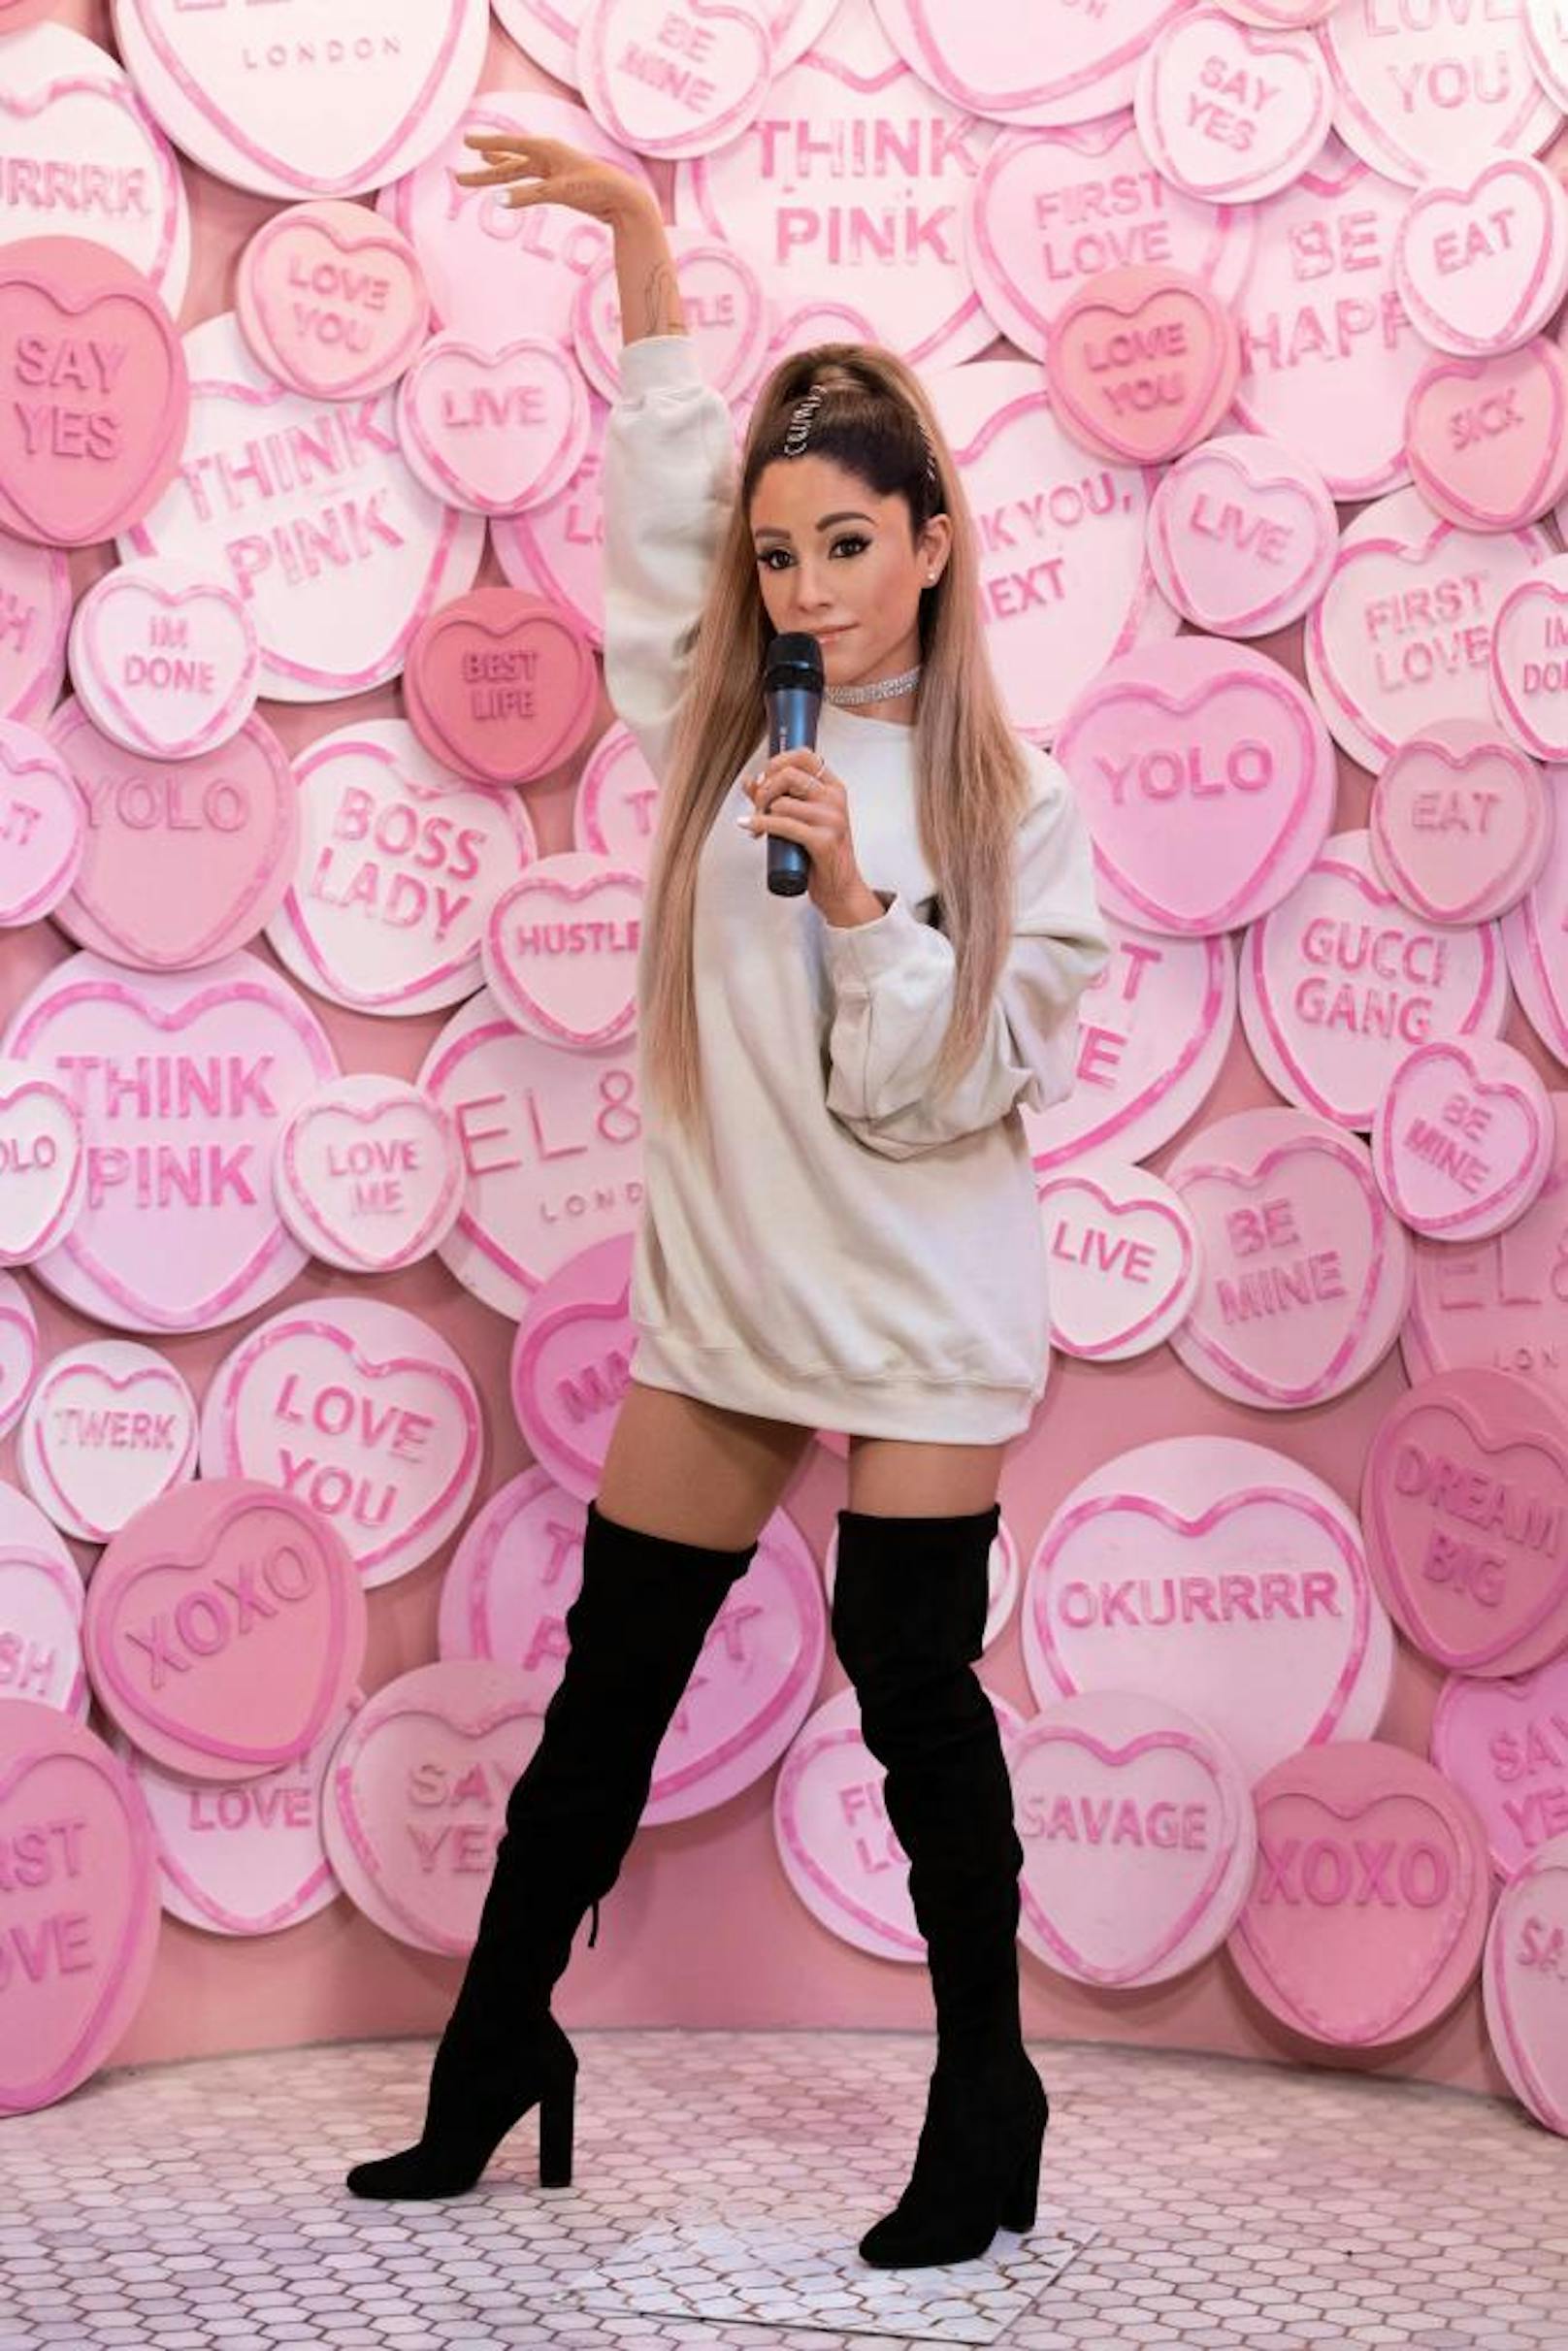 28.05.2019: Seit Donnerstag ist die neue Wachsfigur von Ariana Grande (25) im legendären "Madame Tussauds" in London zu "bewundern". Den Fans gefällt's nicht. Die Begründung: Das Exponat sehe Ariana nicht ähnlich und habe einen viel zu hellen Hautton.